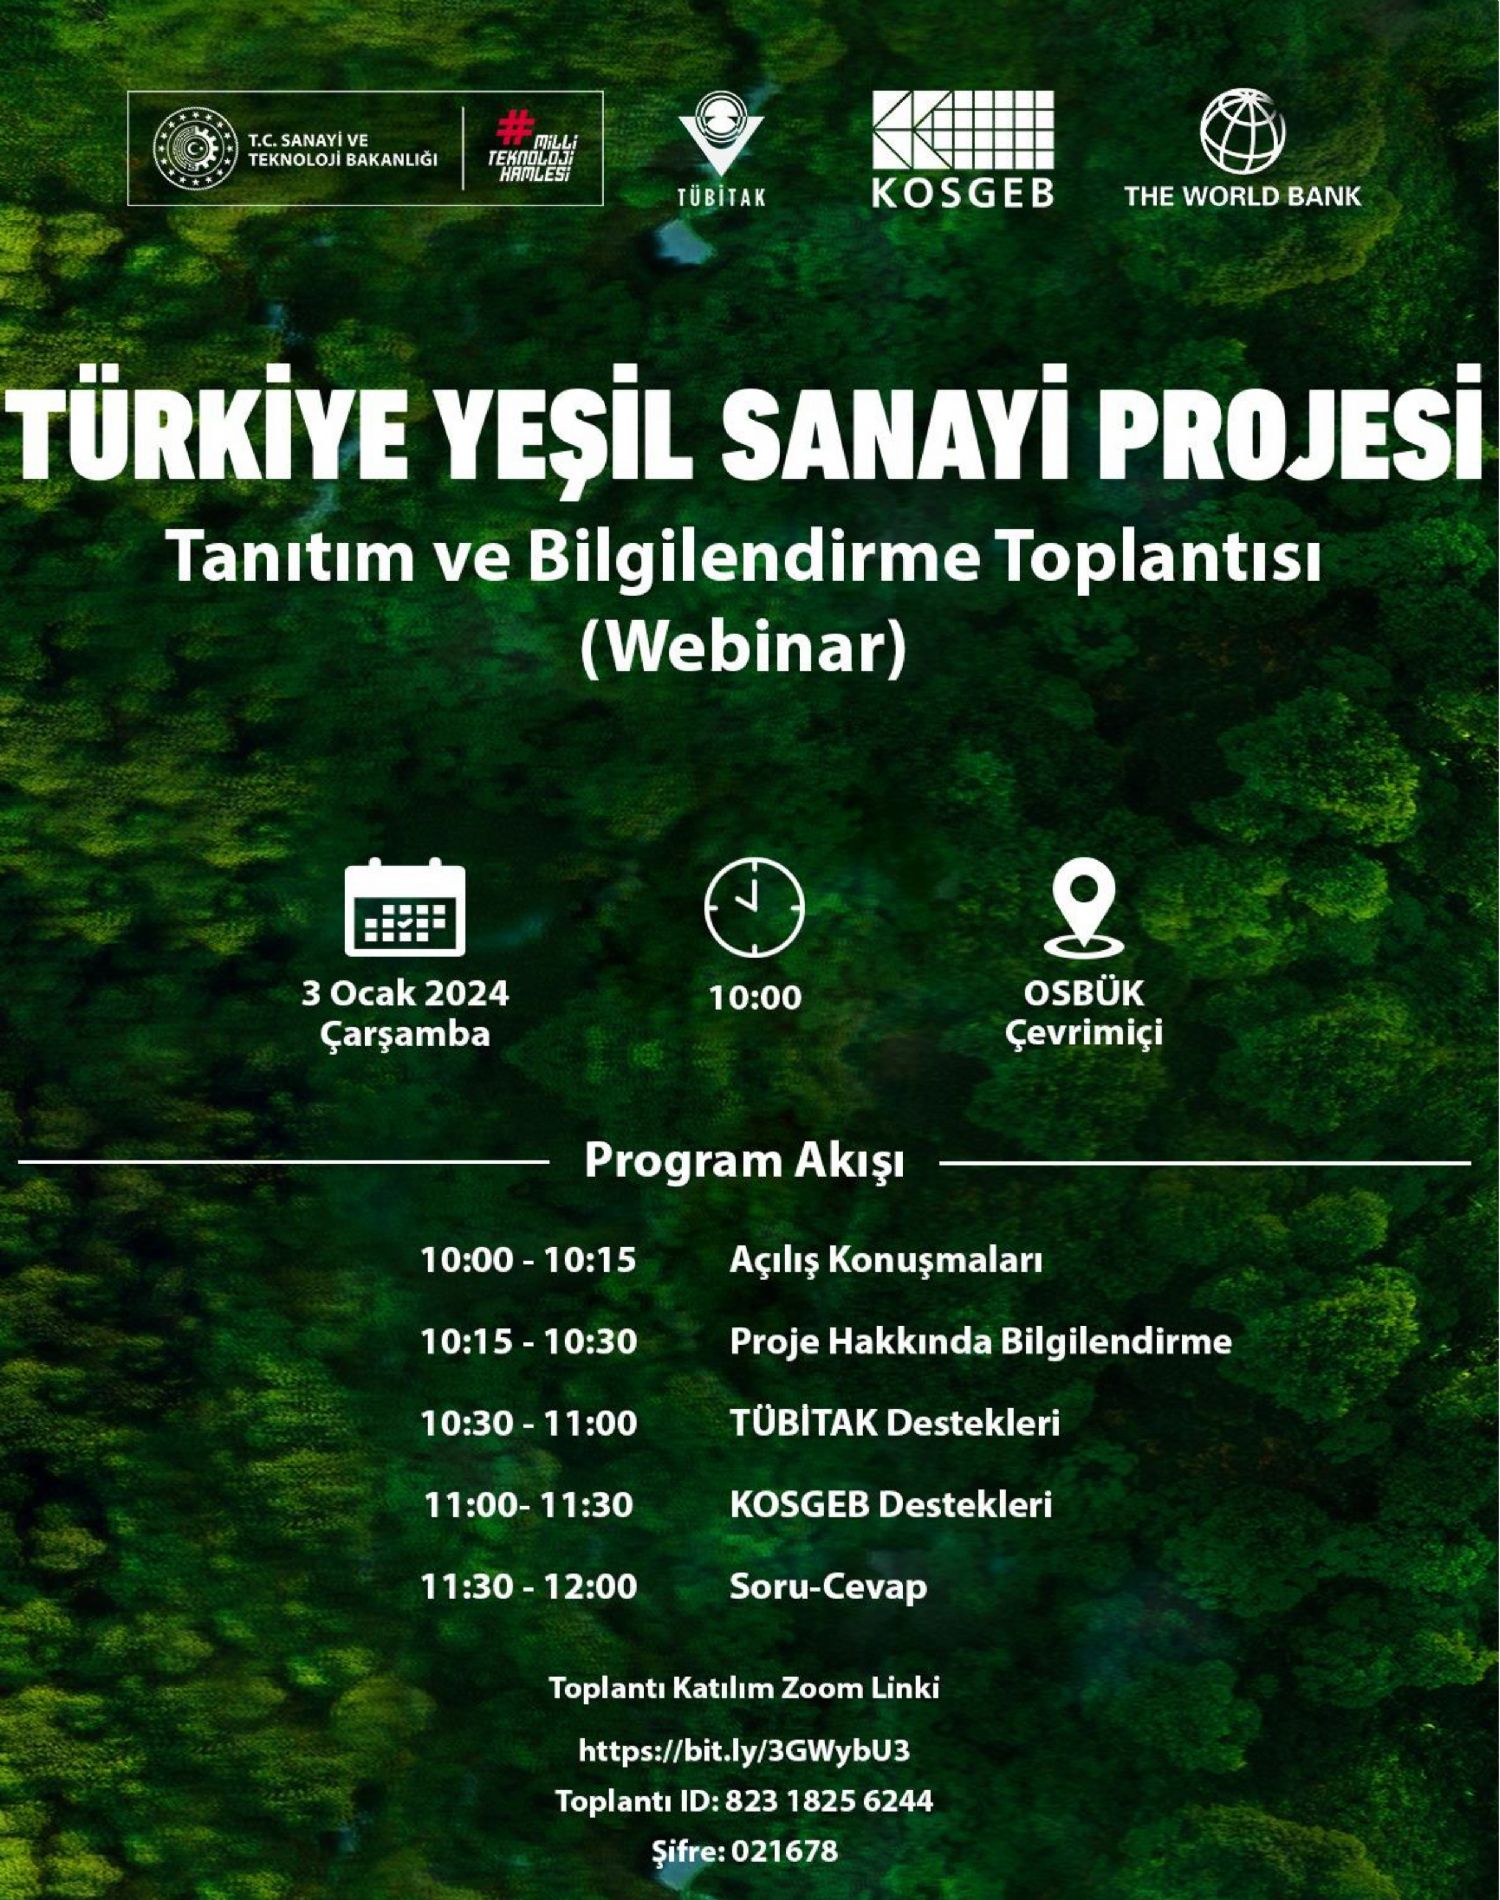 OSBÜK Türkiye Yeşil Sanayi Projesi Tanıtım ve Bilgilendirme Toplantısı Duyurusu